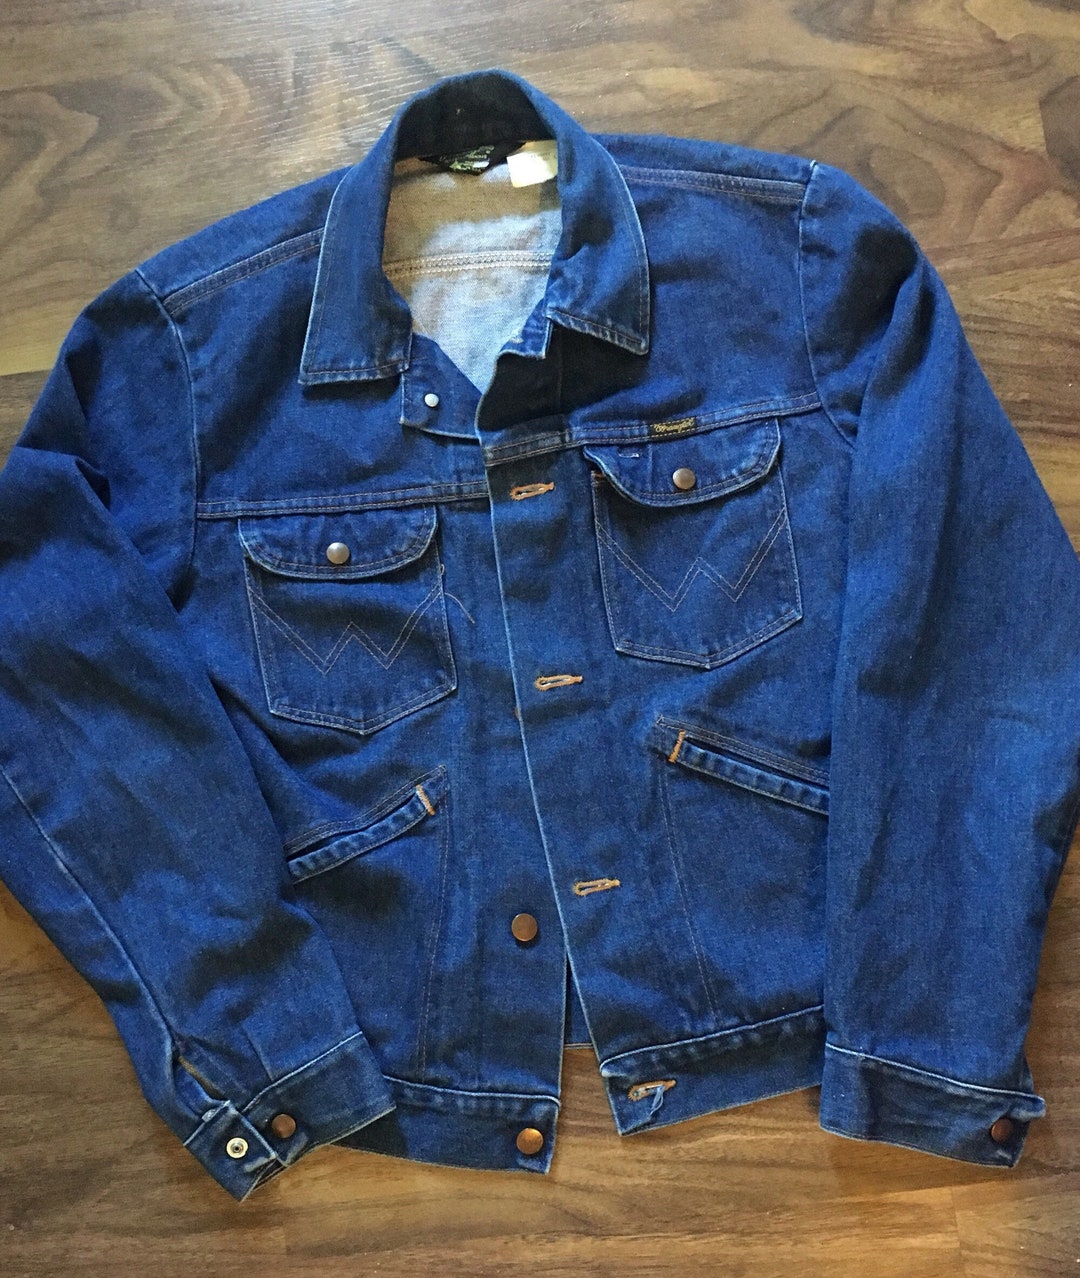 Wrangler No Fault Denim Jacket 1970s Vintage Jean Jacket - Etsy